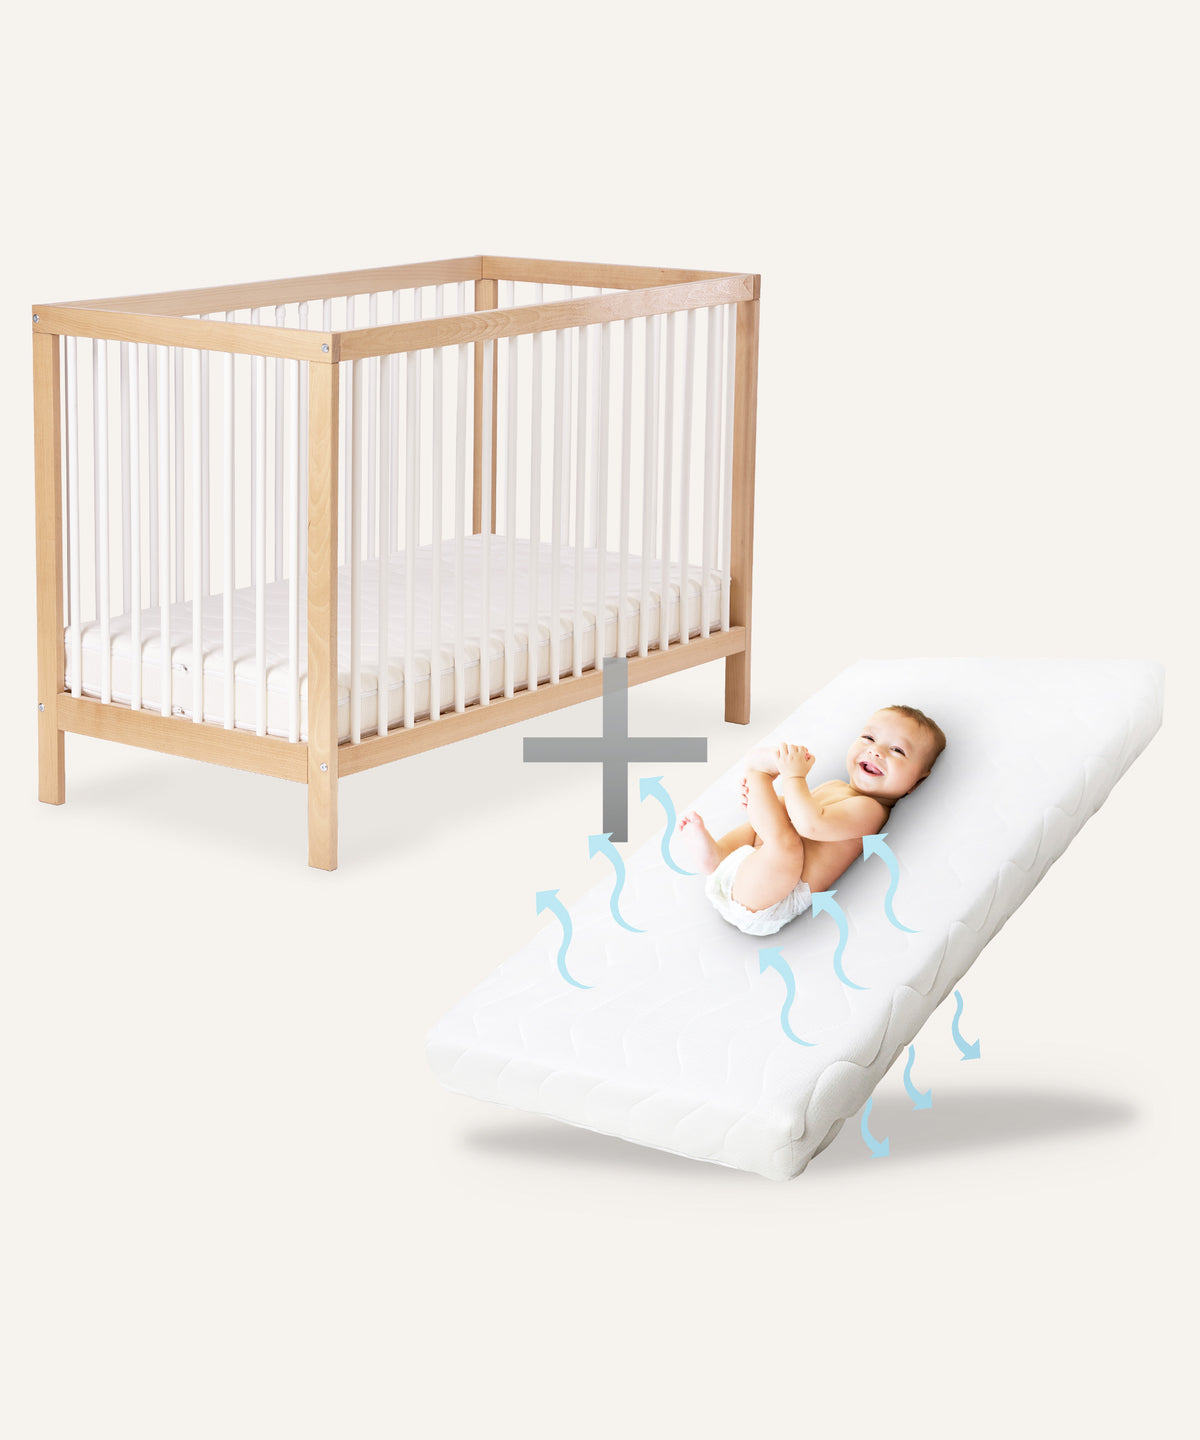 Heizmatte für Baby- und Kinderbetten, 40cm x 60cm